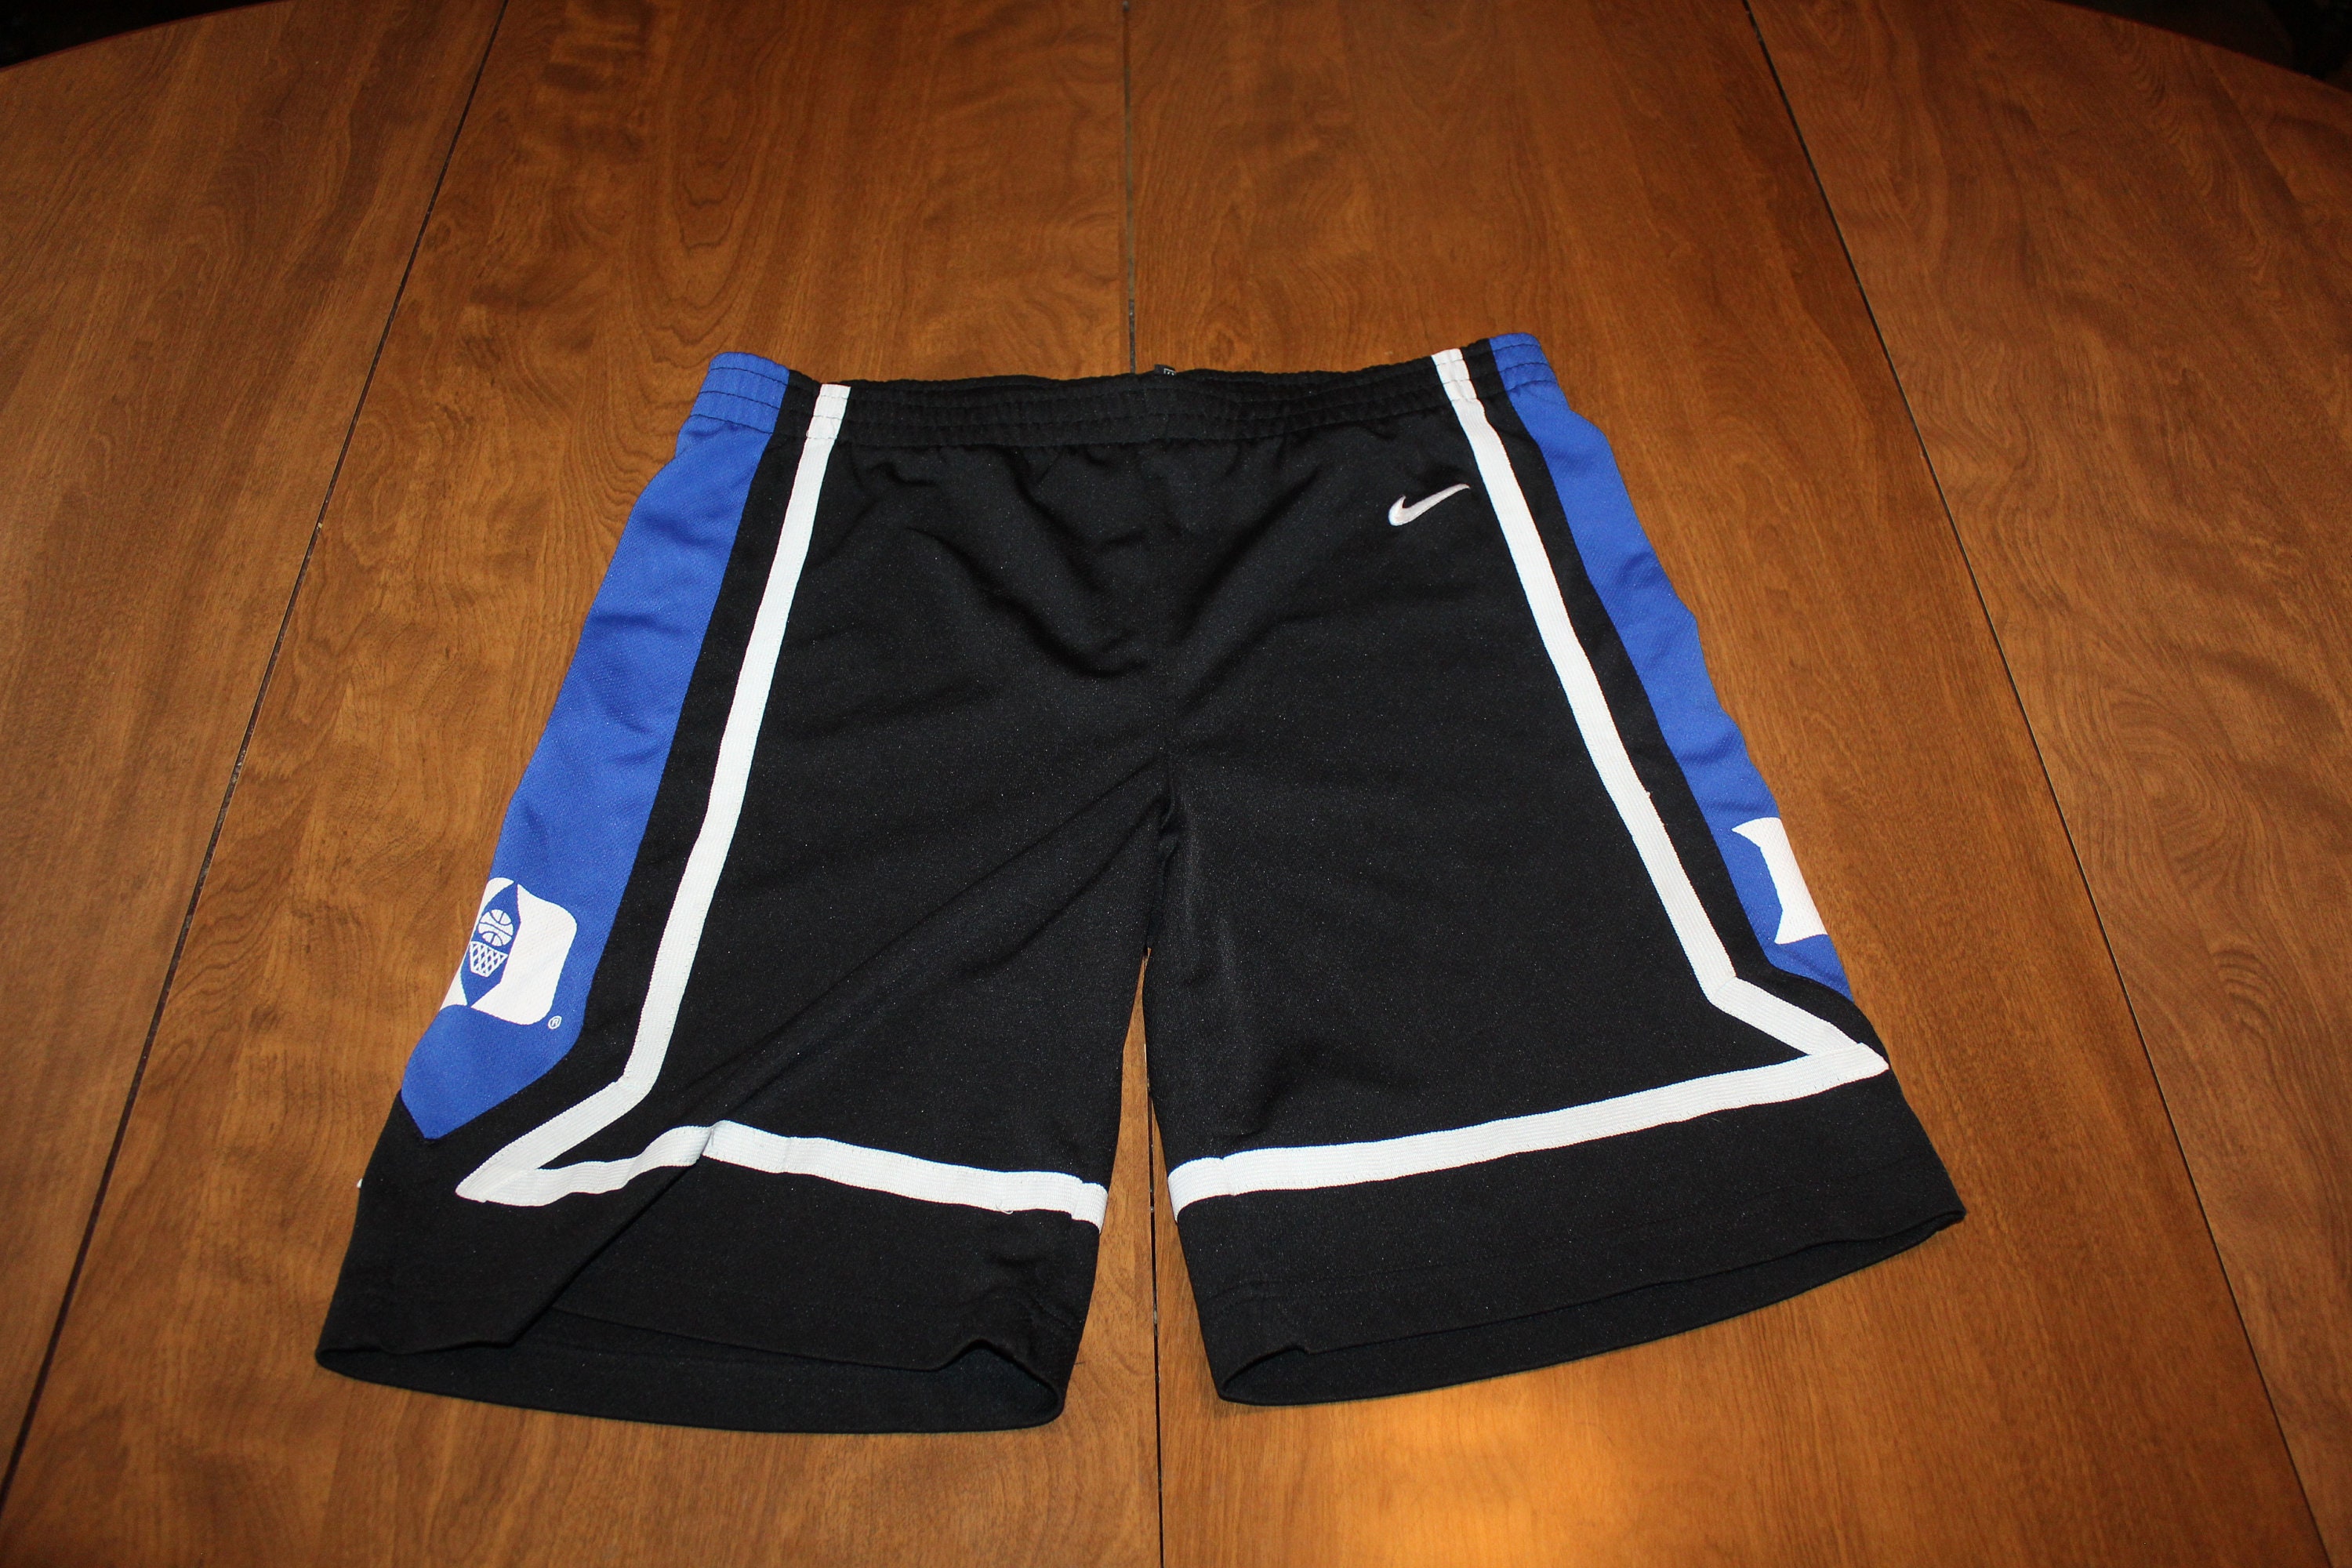 Nike Carolina Limited RETRO Basketball Shorts - White